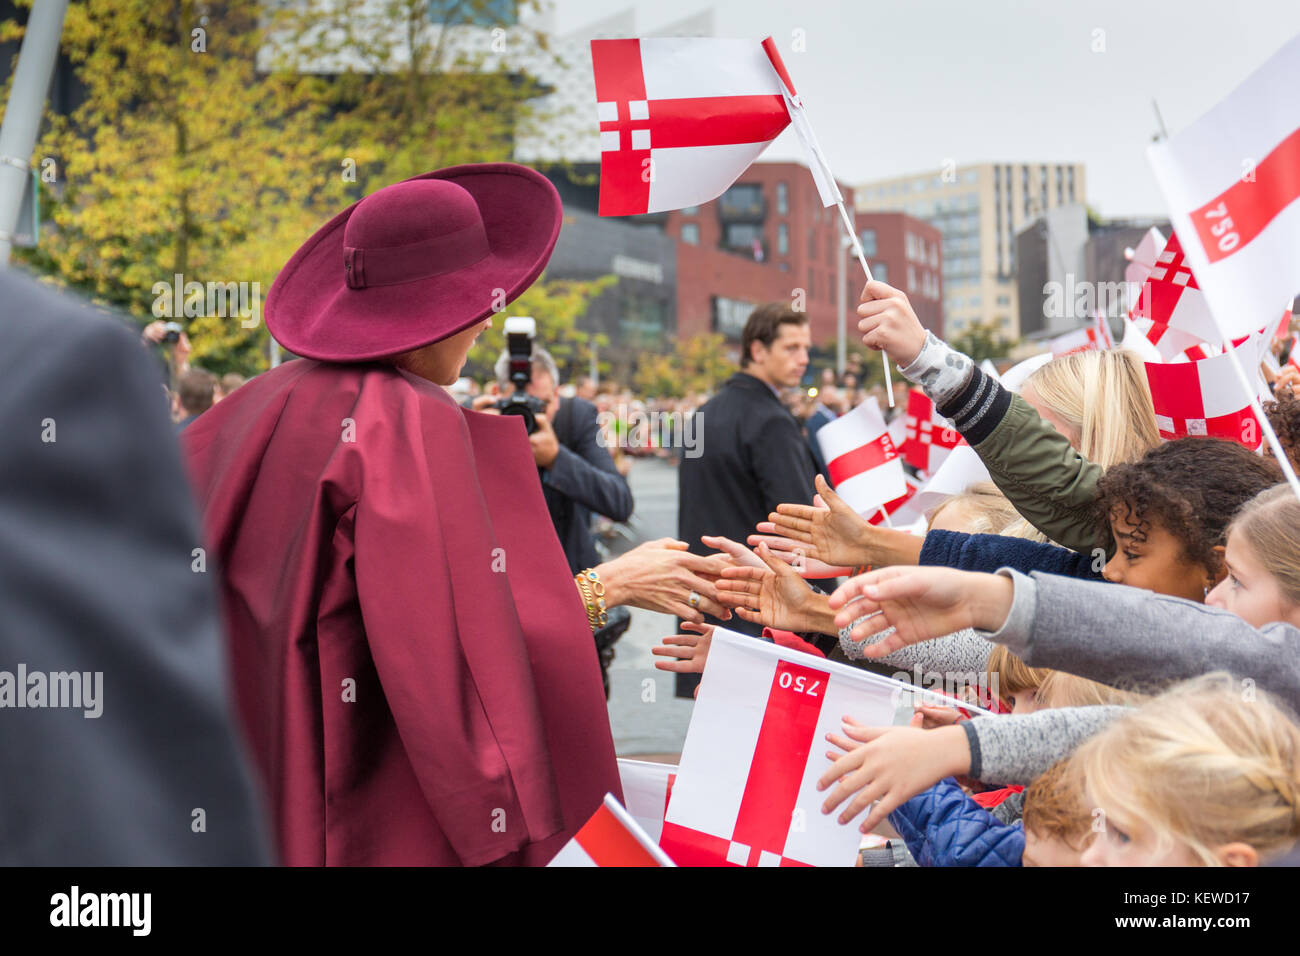 Amersfoort, Holanda. 24 oct, 2017. La reina máxima de los Países Bajos está agitando las manos con el público durante una visita a la ciudad de Amersfoort. Crédito: Astrid hinderks/alamy live news Foto de stock